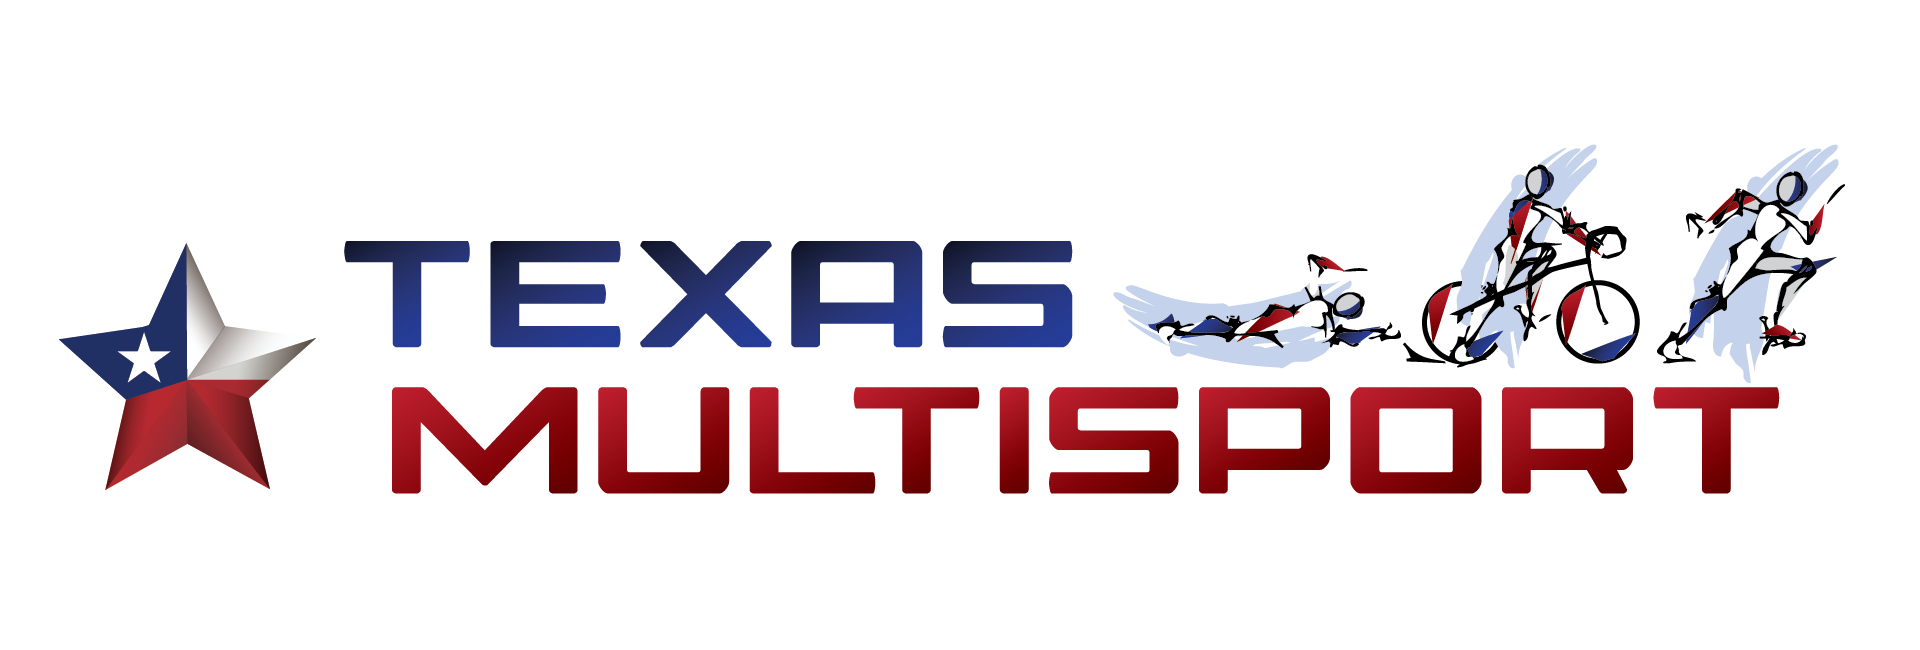 Texas Multisport